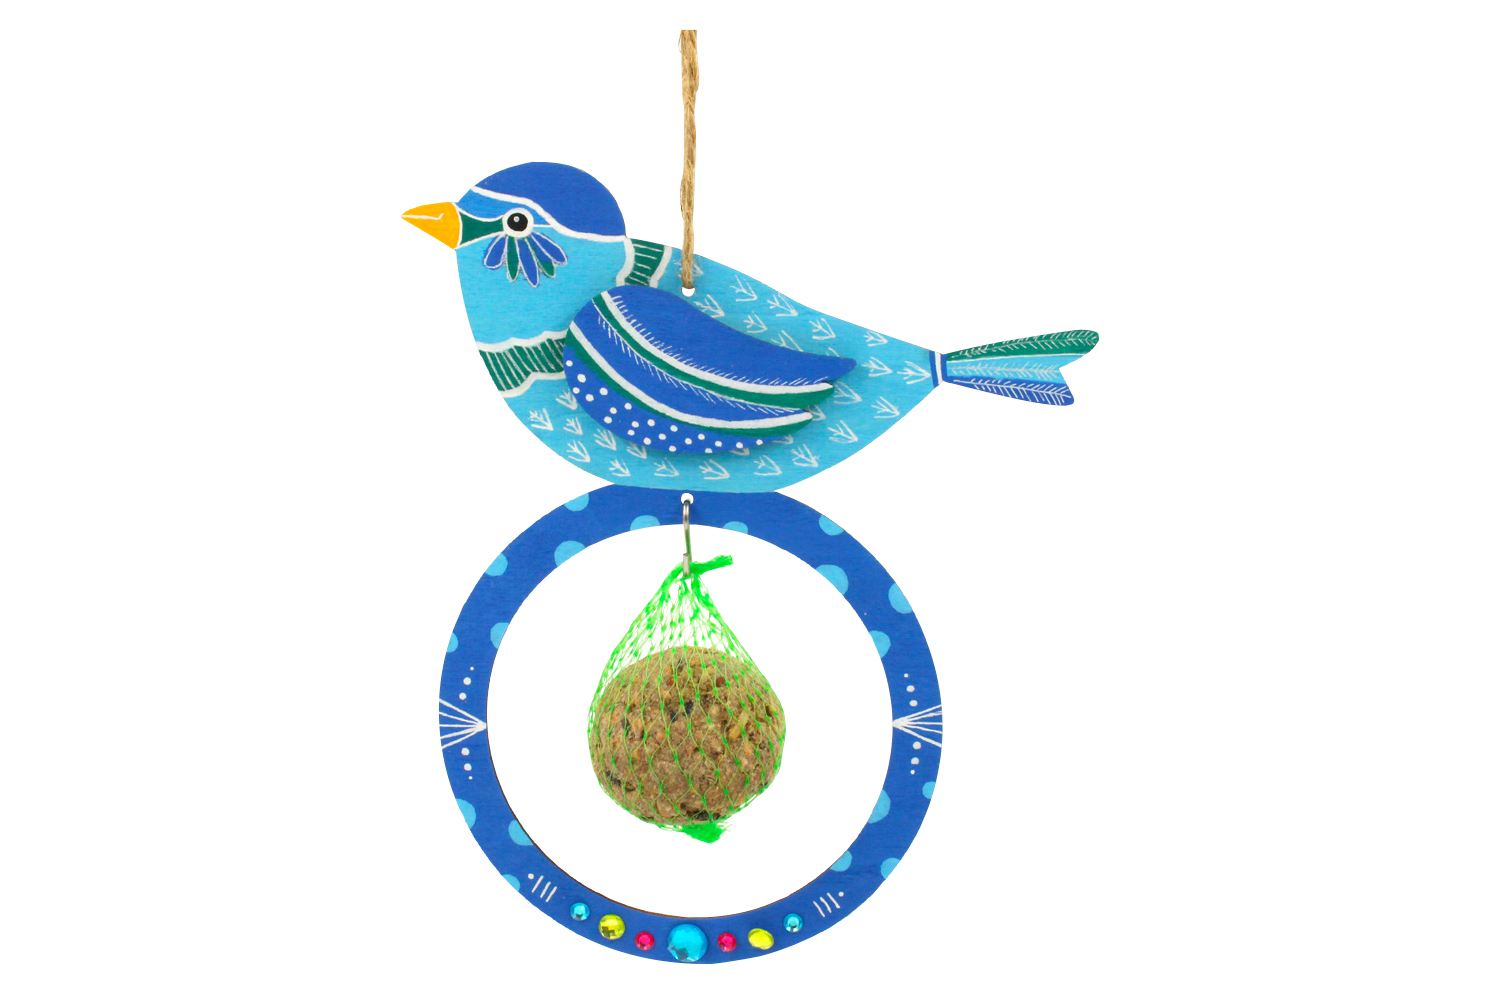 pour Petits Oiseaux pour Boules De Graisse pour Boulettes BEAUTYBIGBANG 2021 Nouveau Mangeoires Distributeur De Nourriture pour Mangeoires À Oiseaux en Plein Air